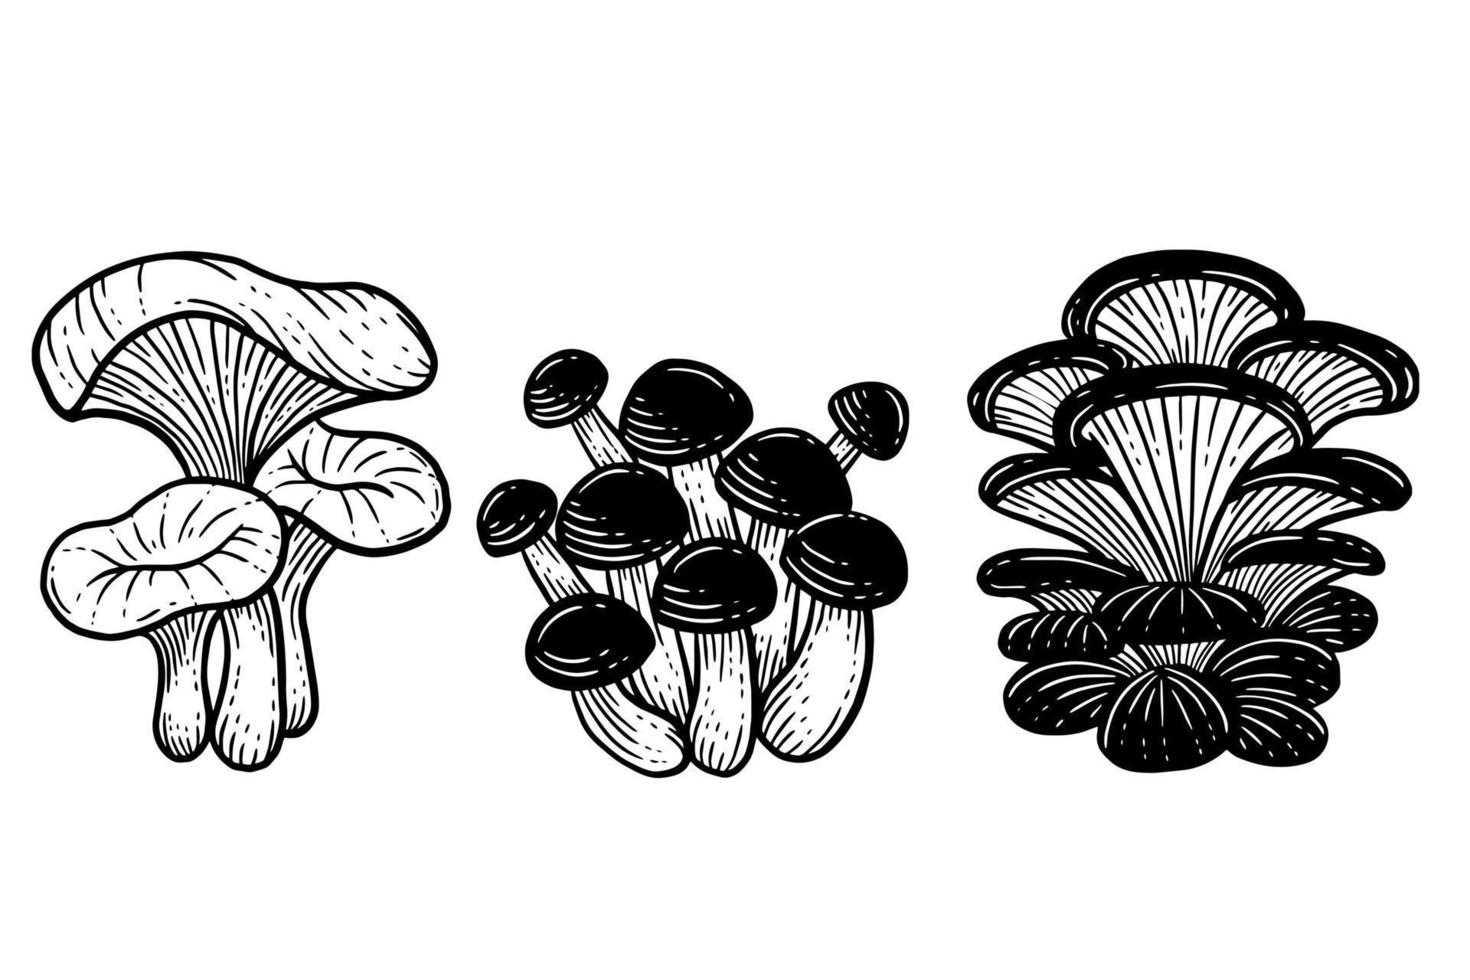 définir des aliments sains aux champignons illustration de contour dessiné main gravée vecteur